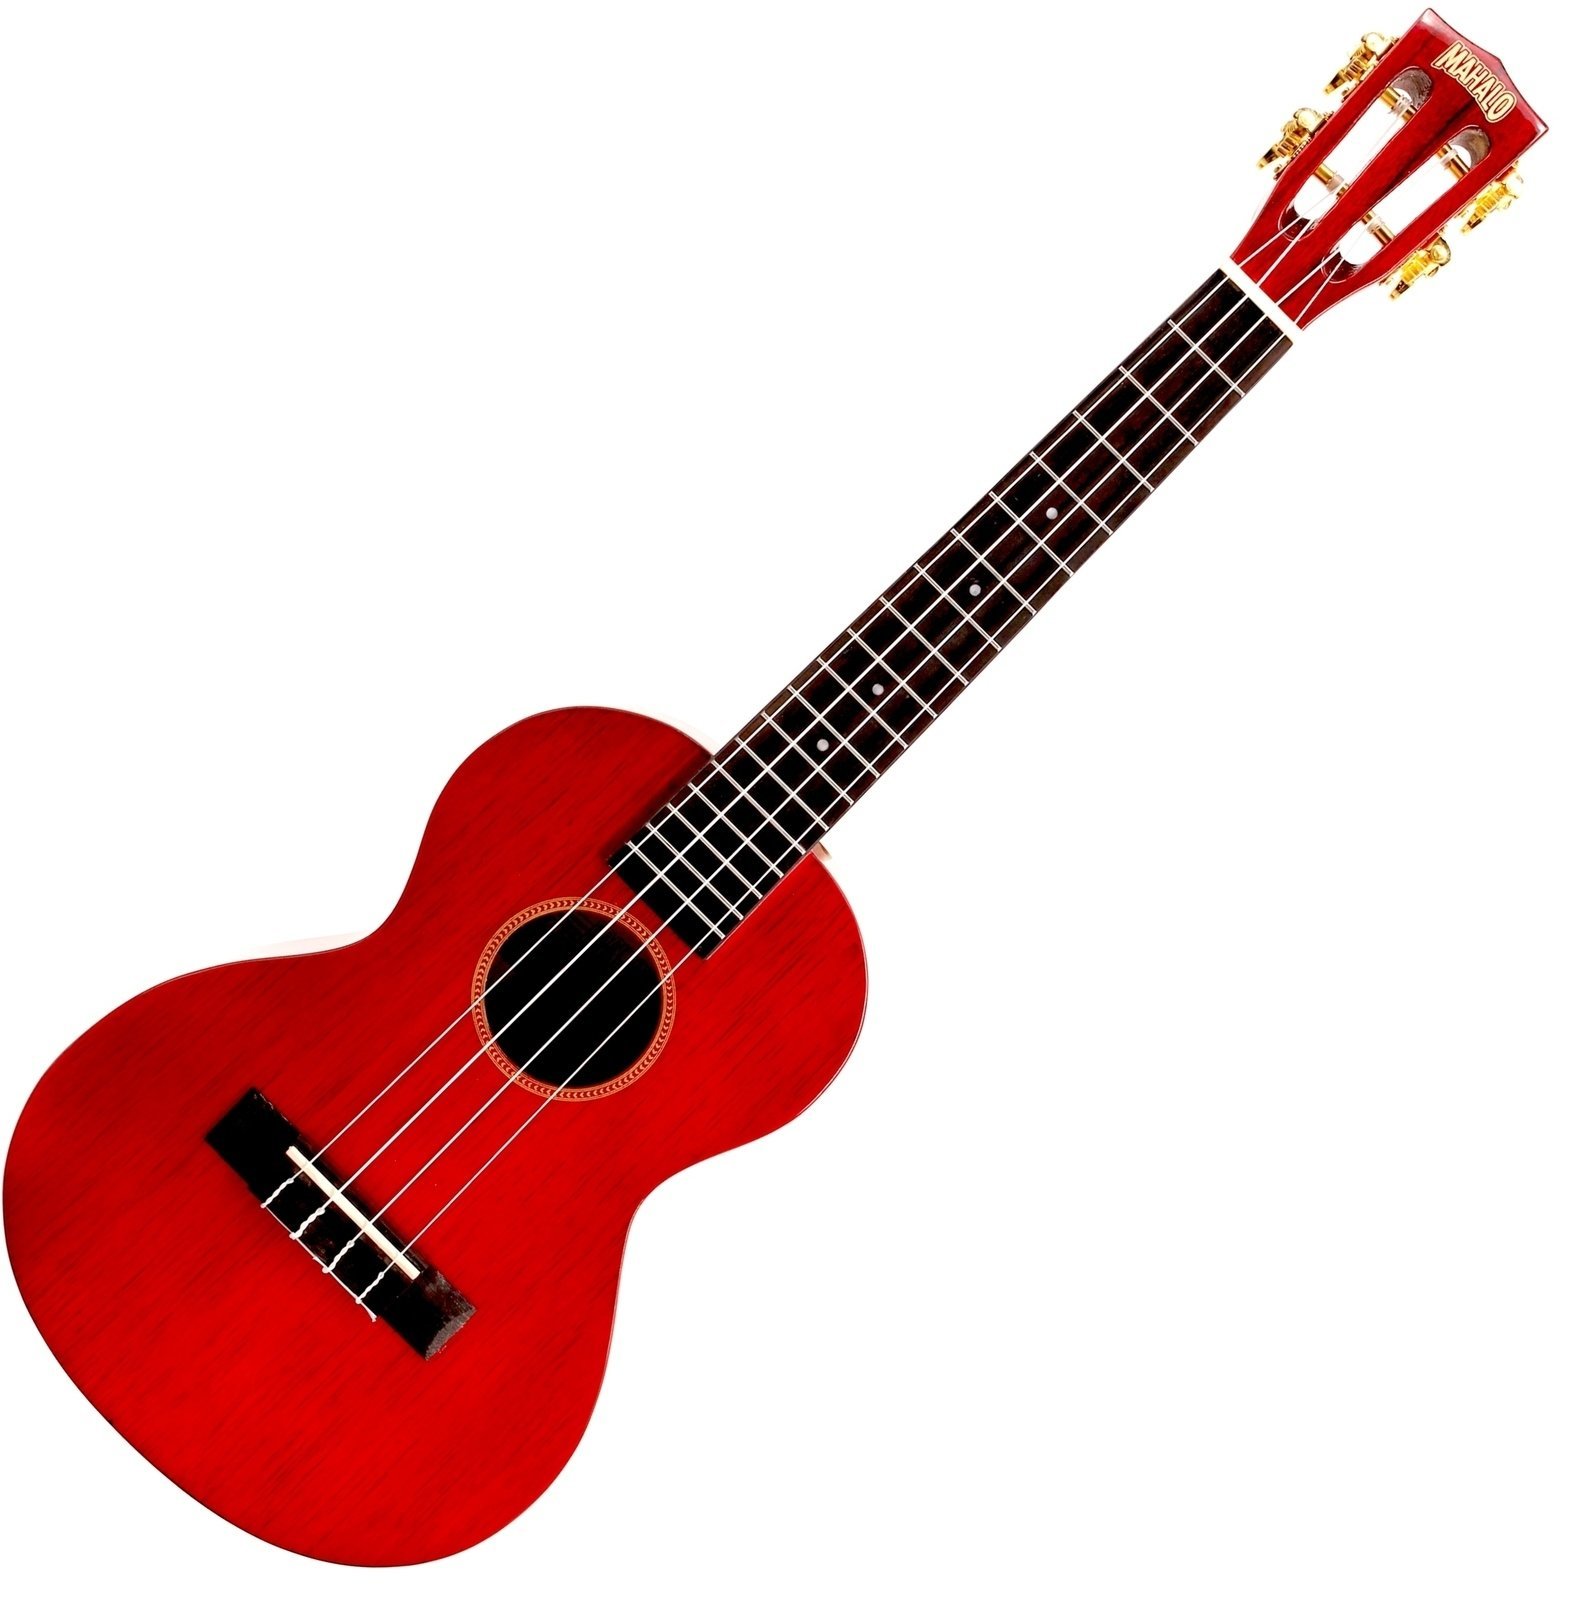 Tenori-ukulele Mahalo Tenor Ukulele Trans Wine Red